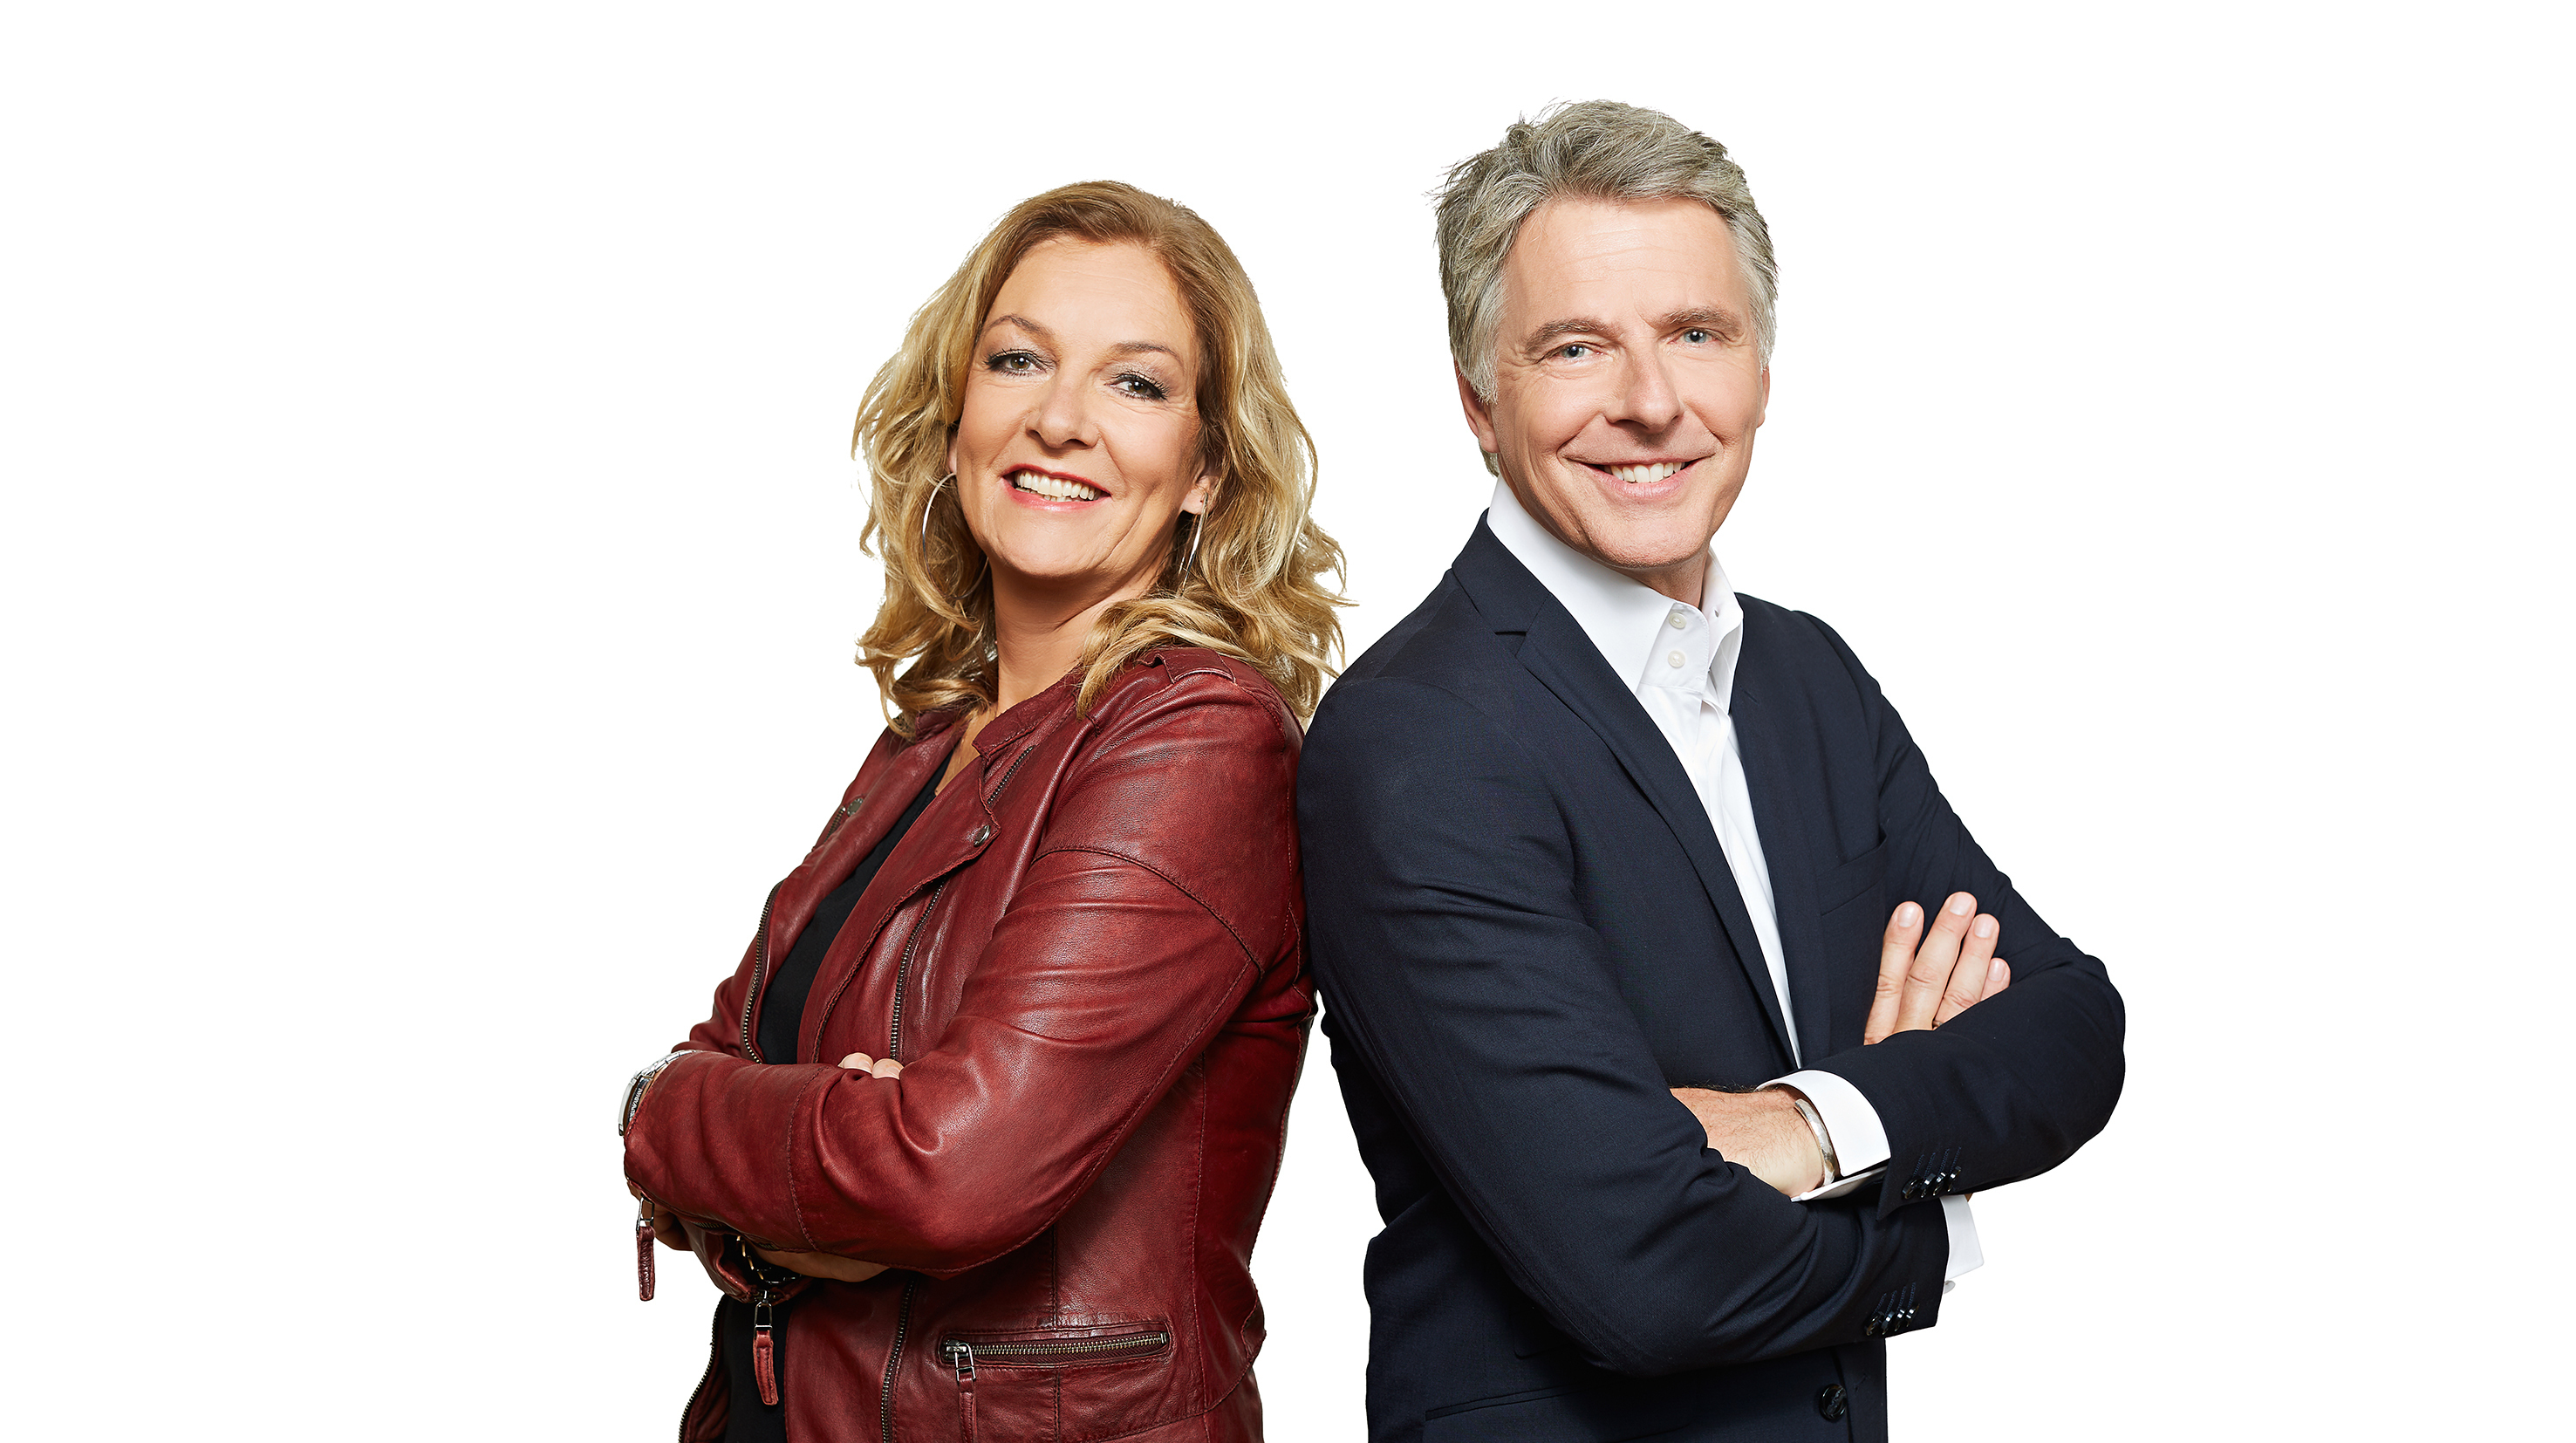 NDR Talk Show, Bettina Tietjen, Jörg Pilawa, Talk-Partner, Hannover, NDR, Fernsehen, News, Nachrichten